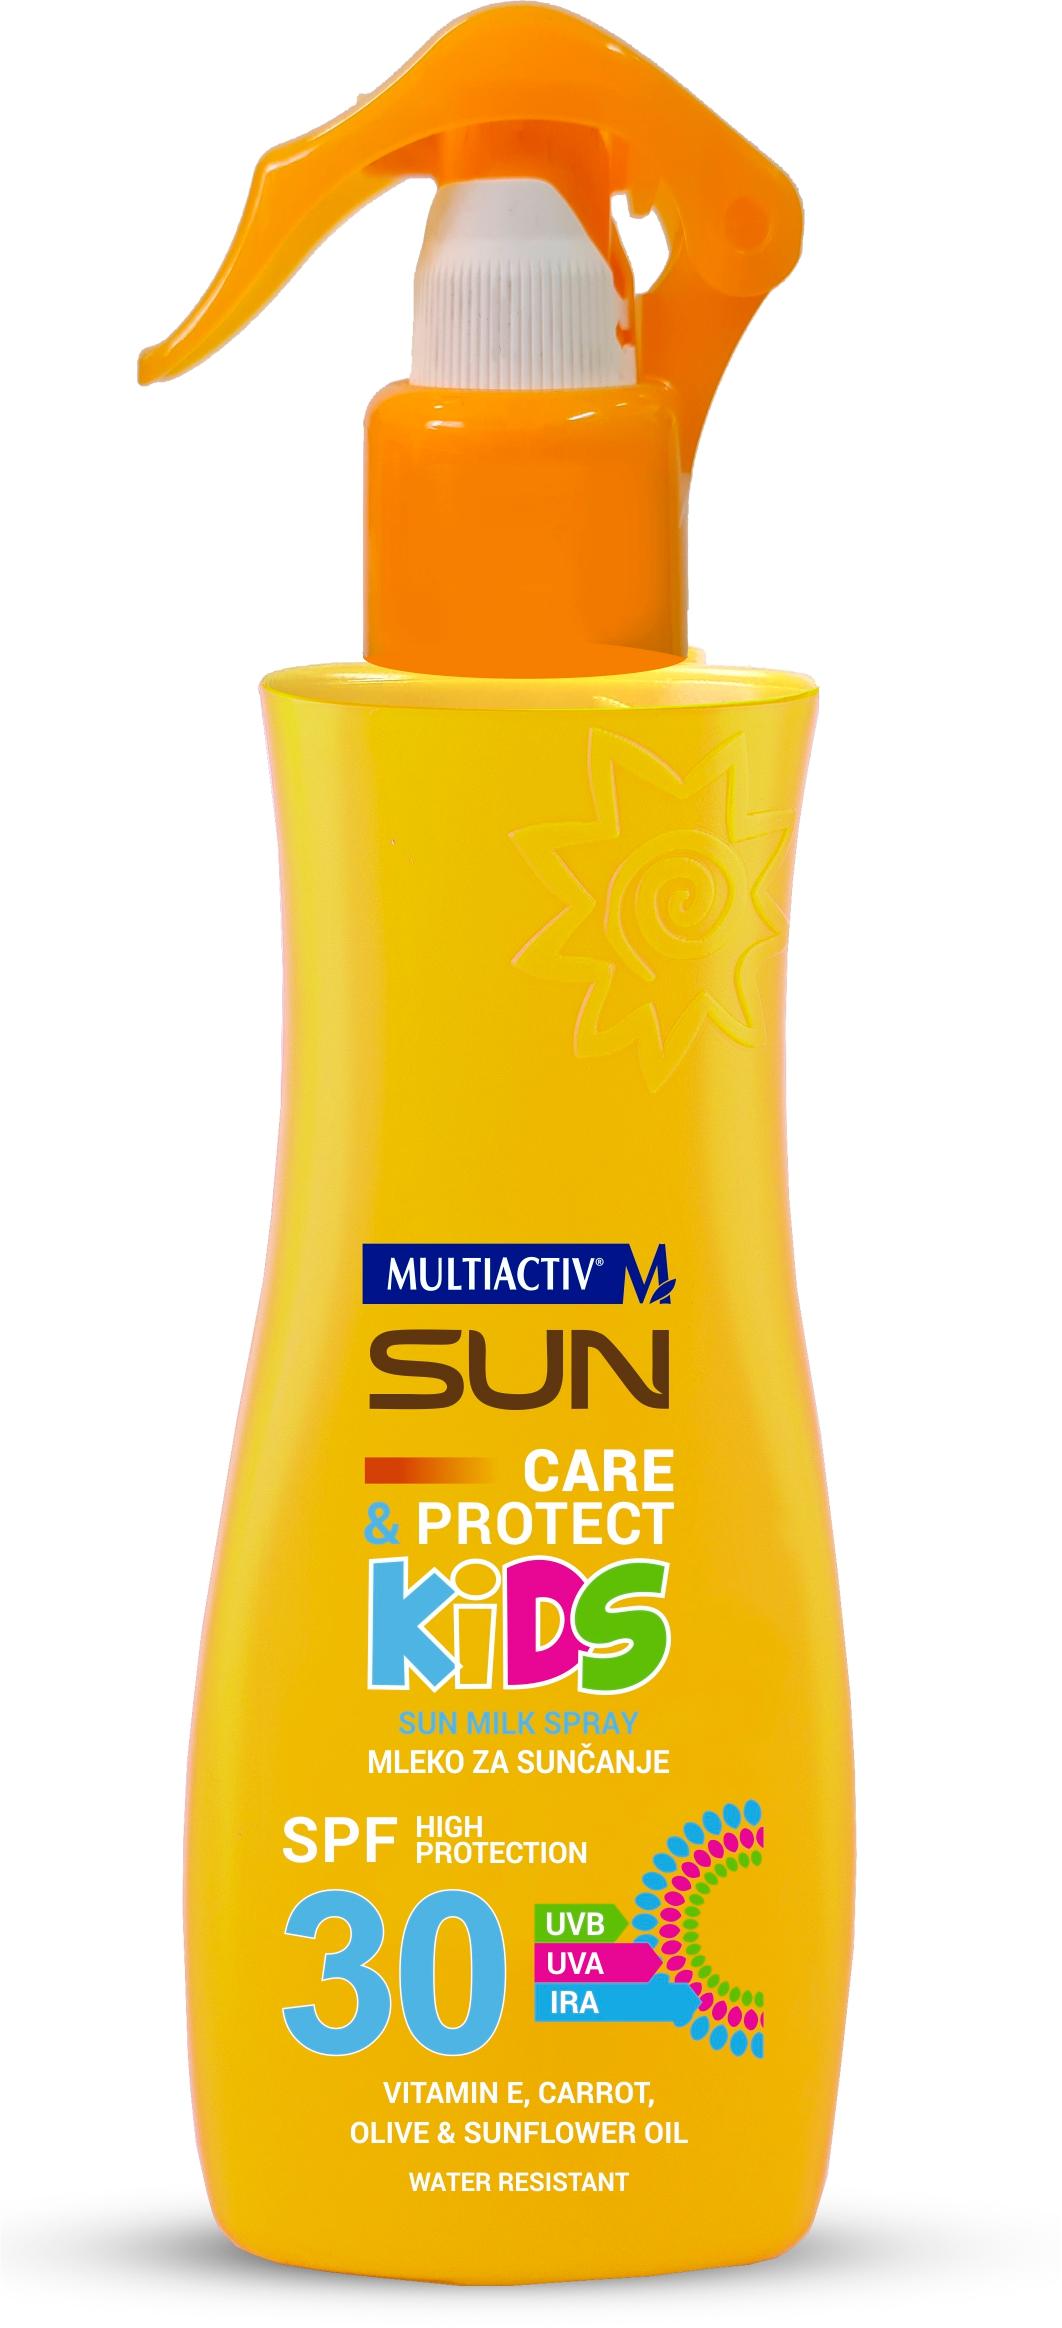 MULTIACTIV Mleko za sunčanje u spreju Sun Care&Protect Kids SPF 30 200ml